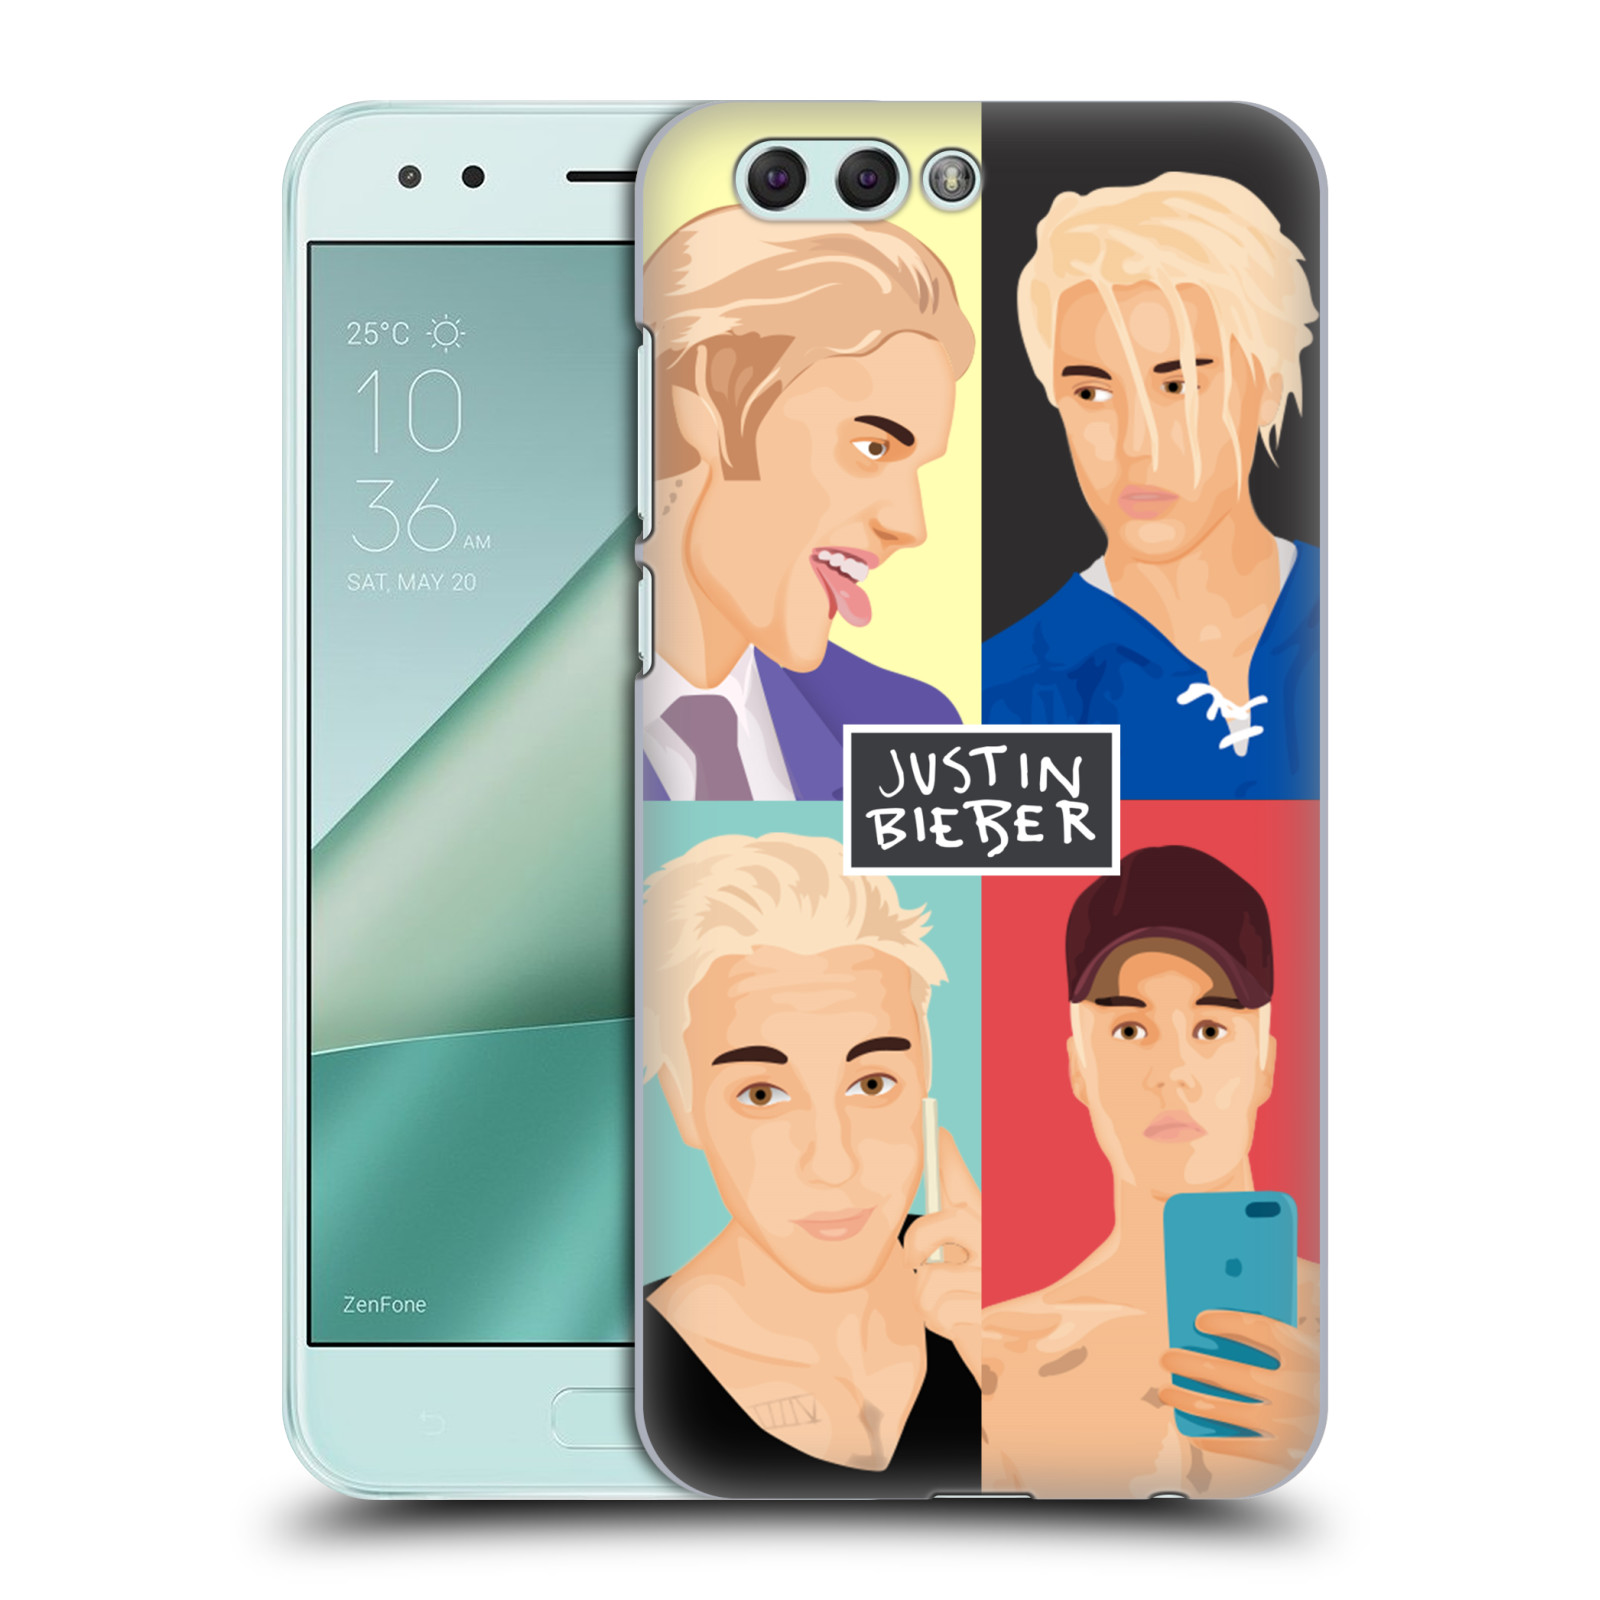 HEAD CASE plastový obal na mobil Asus Zenfone 4 ZE554KL Justin Bieber kreslená tvář 4 tváře